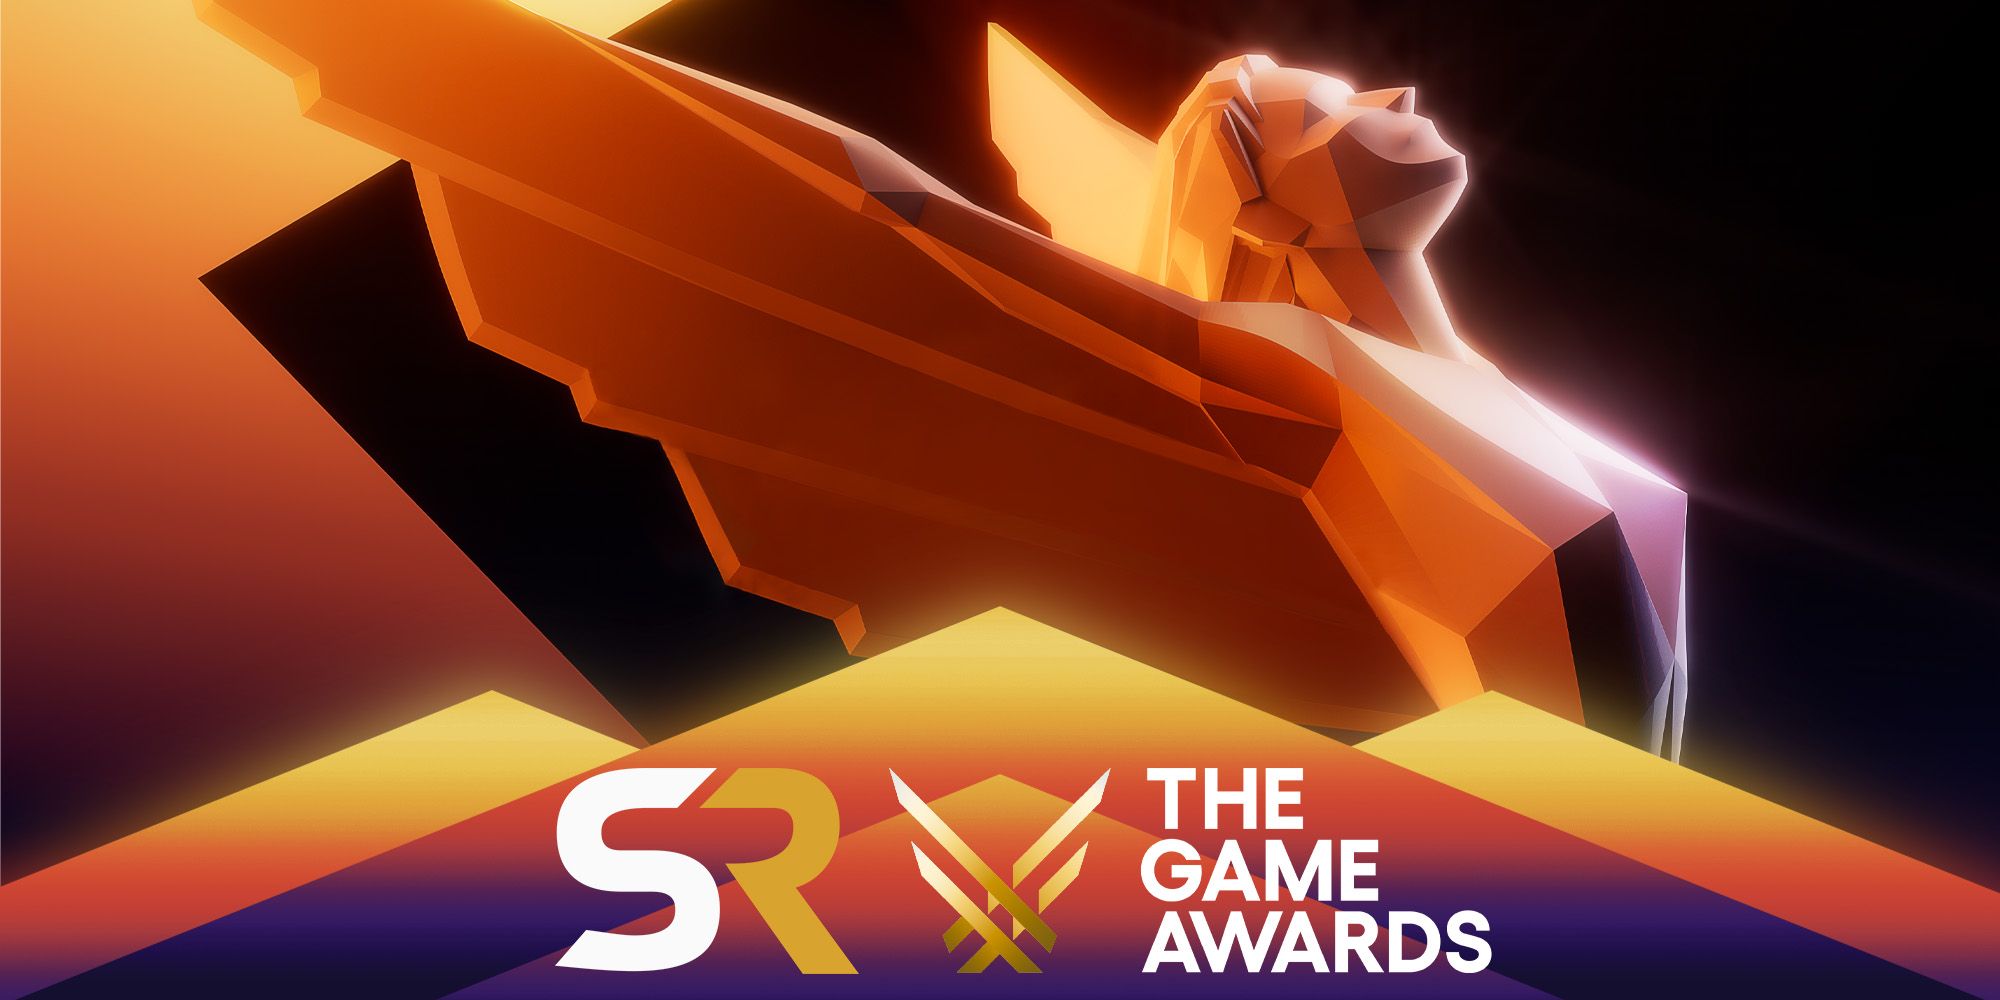 Logotipo de The Game Awards, una representación poligonal de una mujer dorada con alas, sobre un fondo negro y dorado.  En la parte inferior de la imagen, el logotipo de Screen Rant se encuentra junto al logotipo de The Game Awards en un patrón triangular.